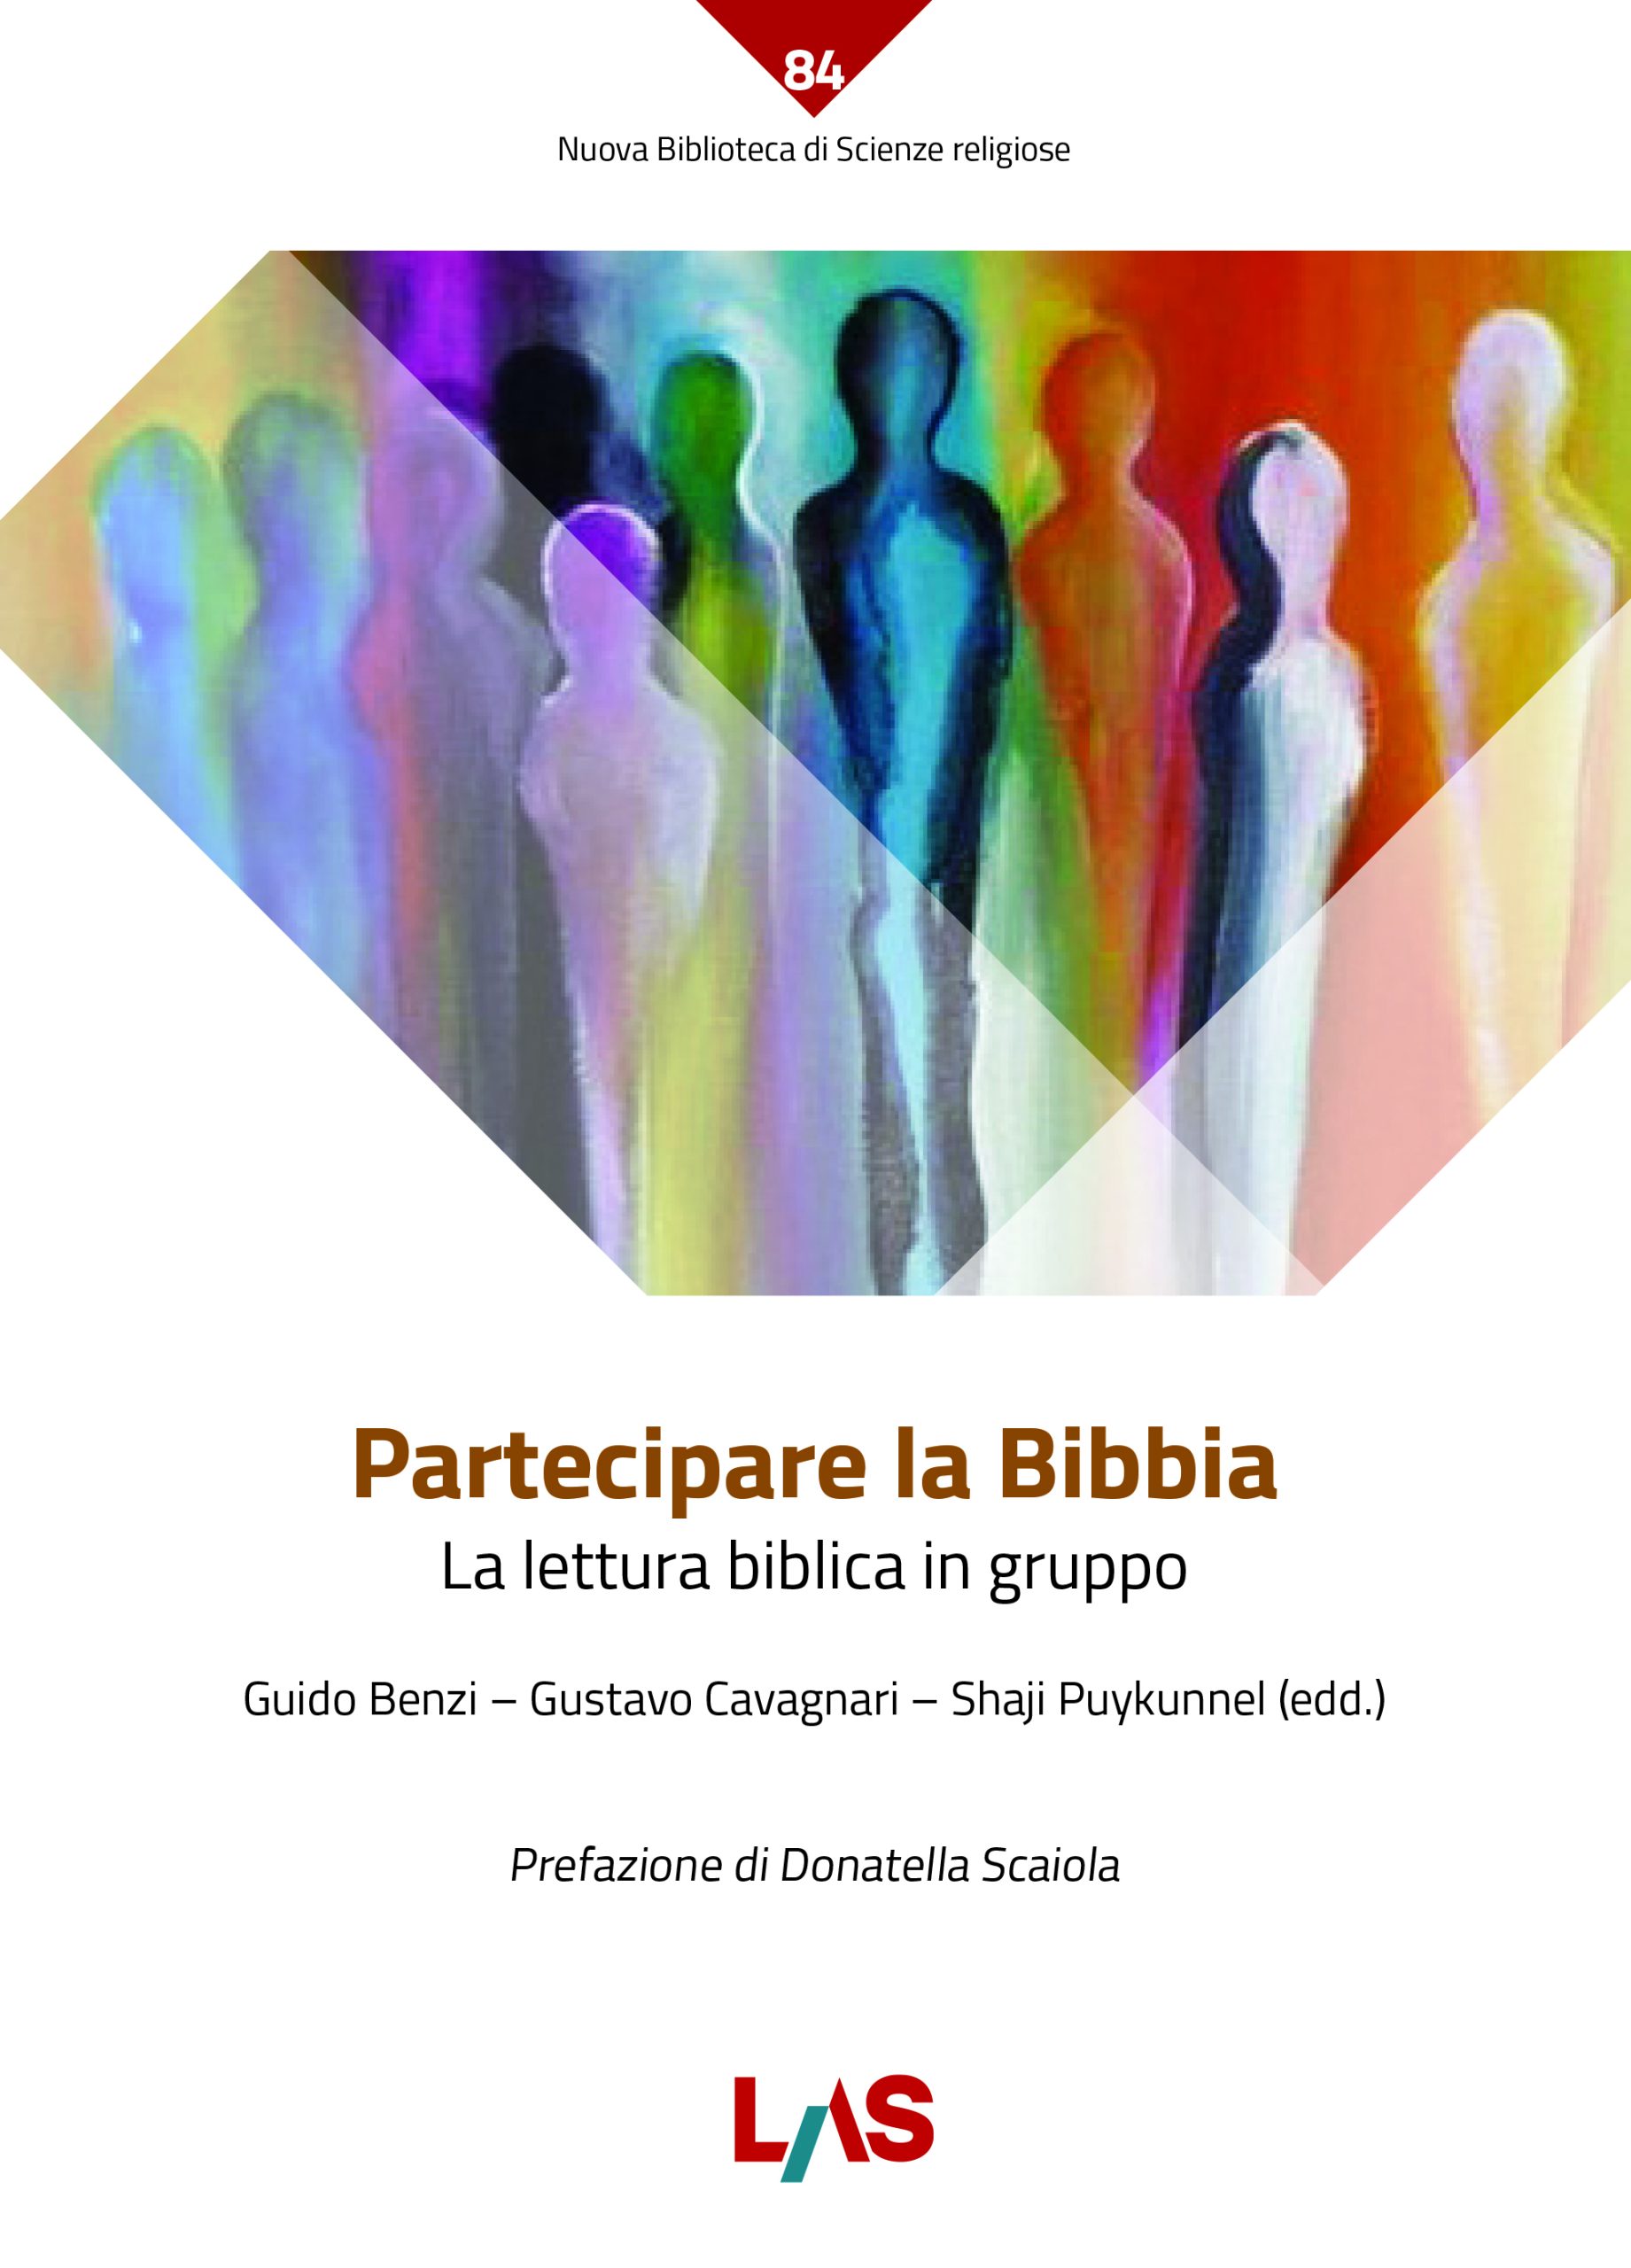 Partecipare la Bibbia – La lettura biblica in gruppo